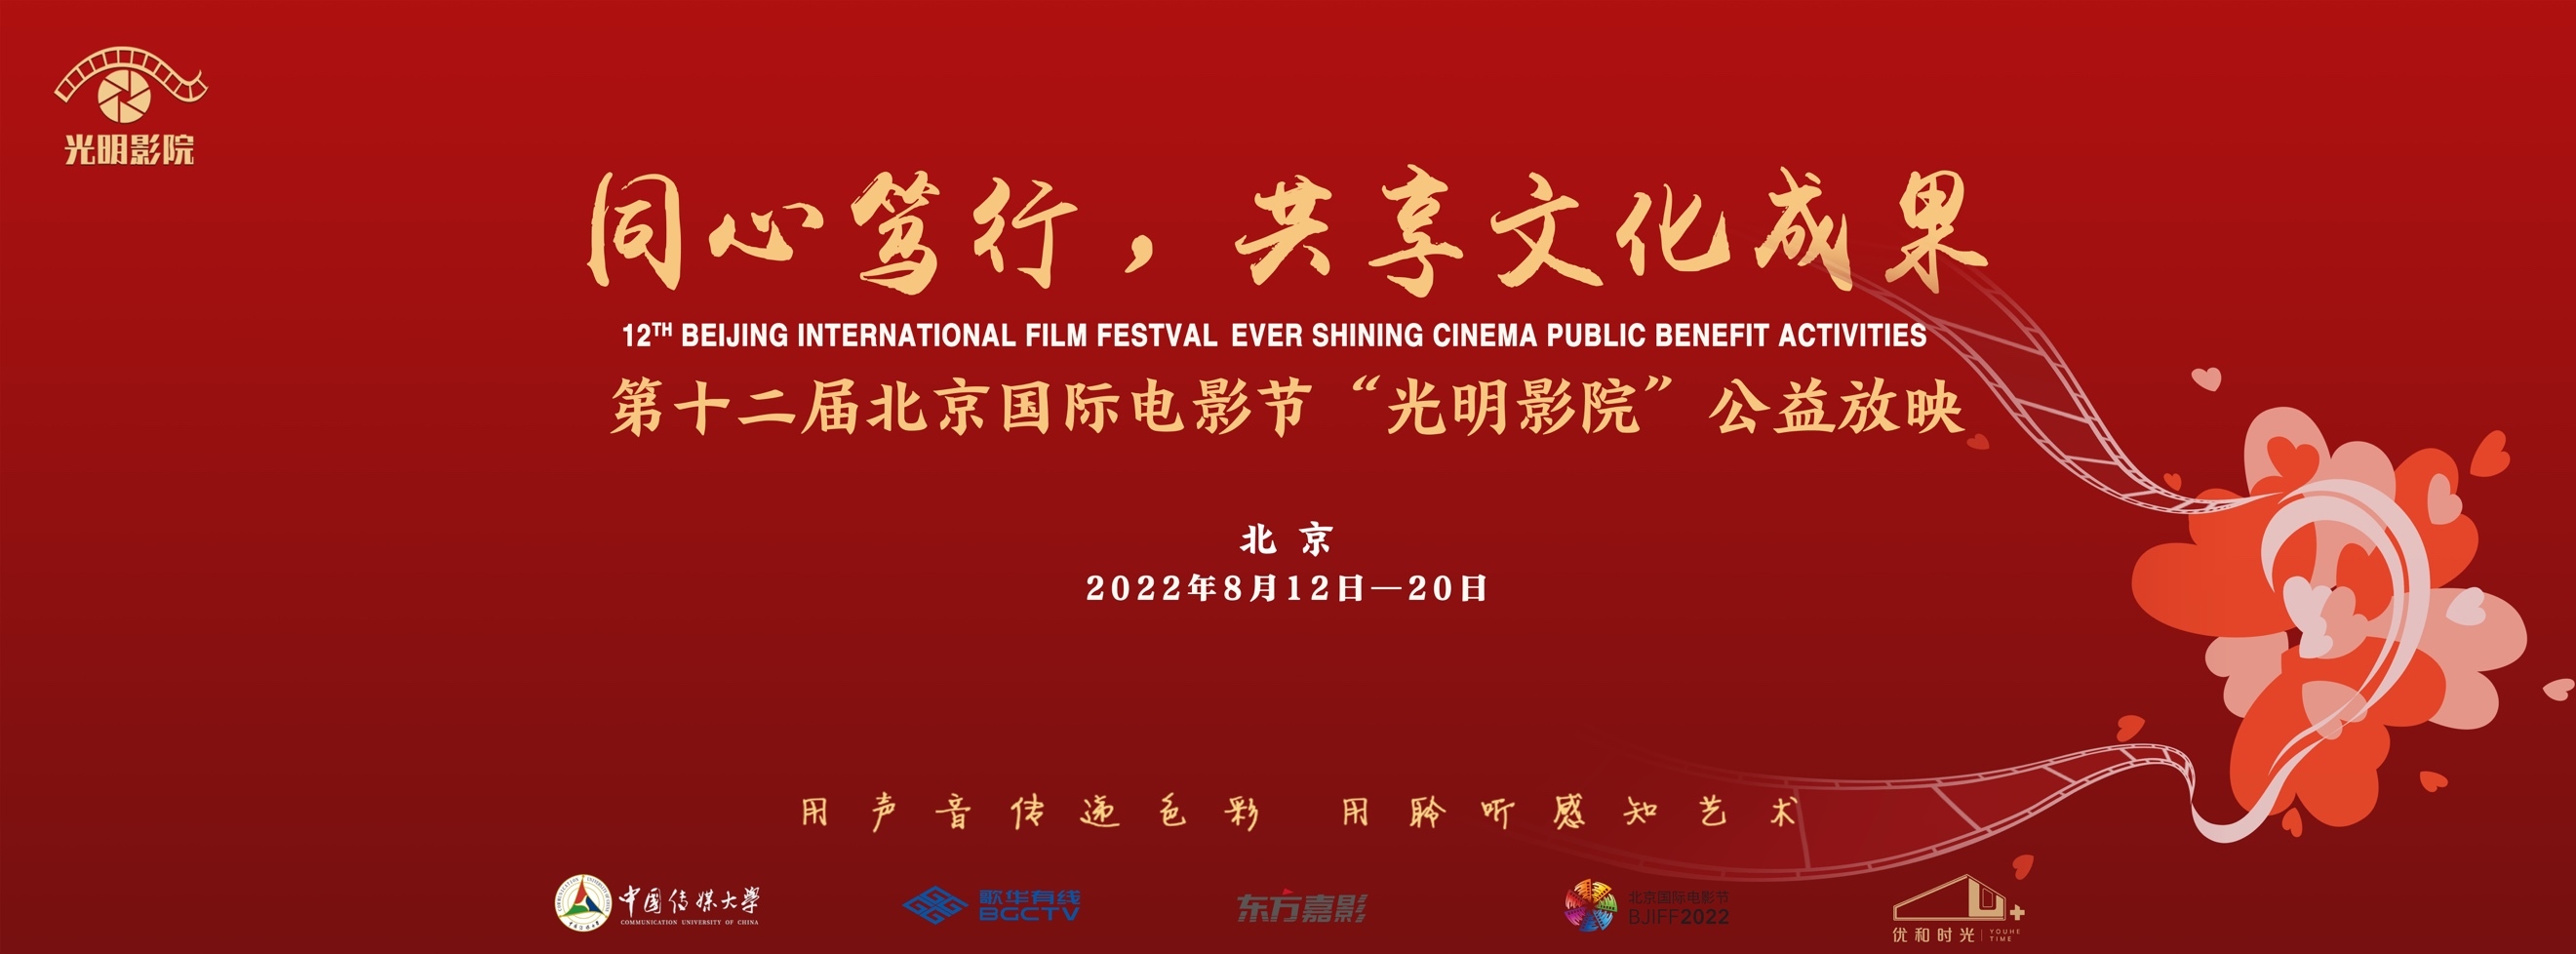 北京國際電影節“光明影院”公益放映走進社區